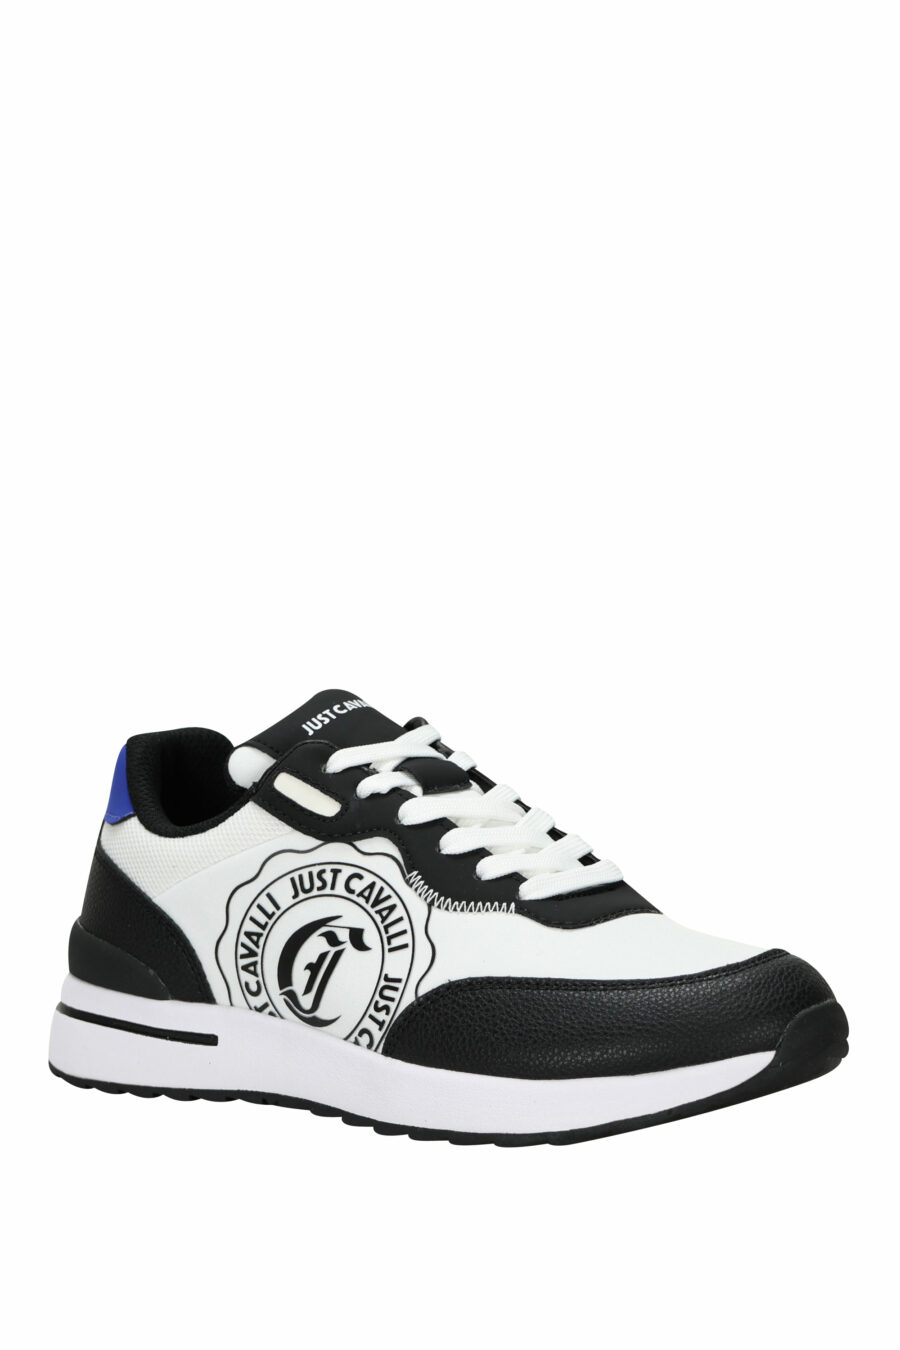 Zapatillas negras con logo circular "c" blanco y suela blanca - 8052672738400 1